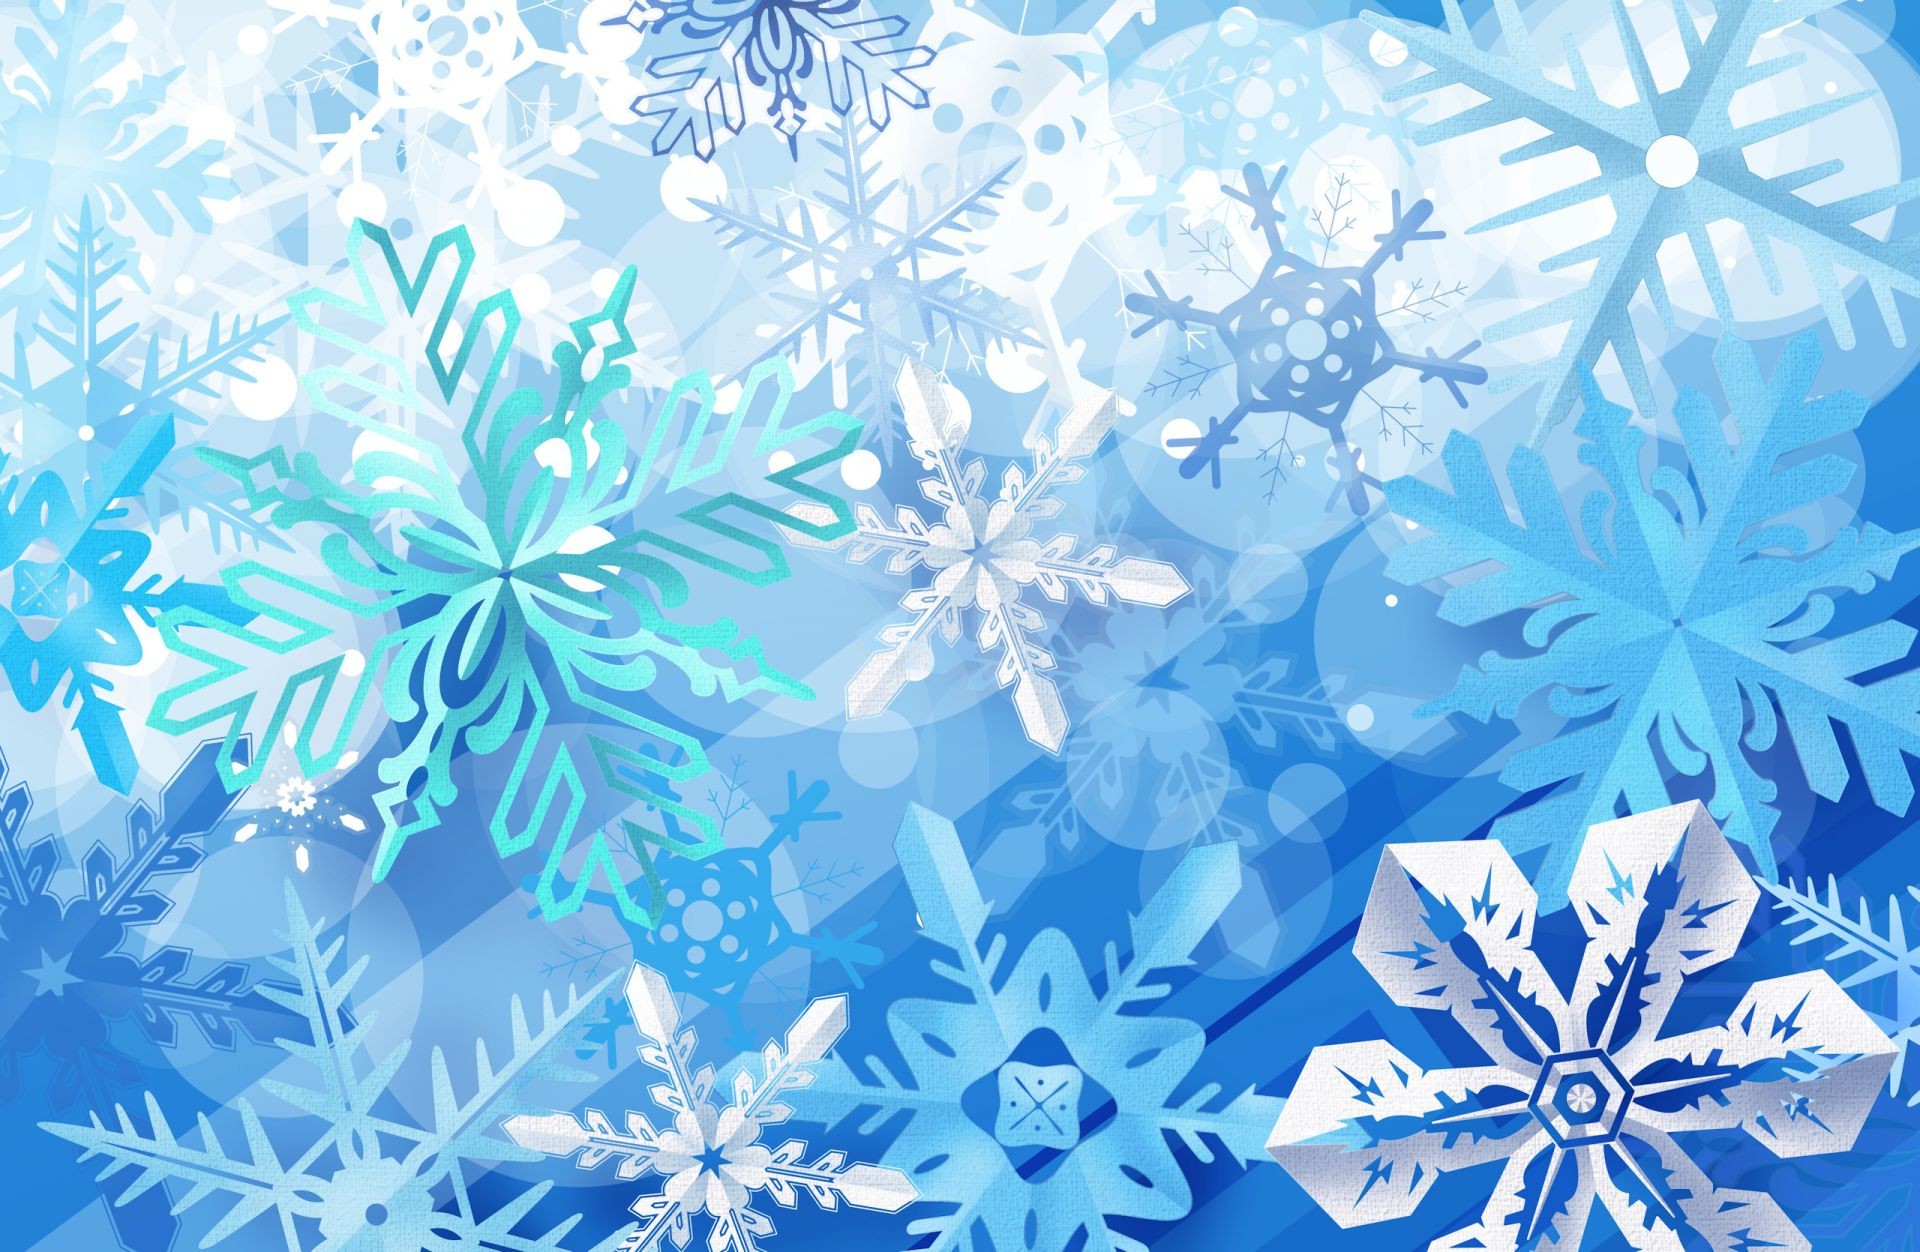 новый год украшения аннотация обои иллюстрация шаблон вектор кристалл искусство витиеватый мороз график снежинка рождество дизайн текстура ретро повторение фон бесшовные яркий